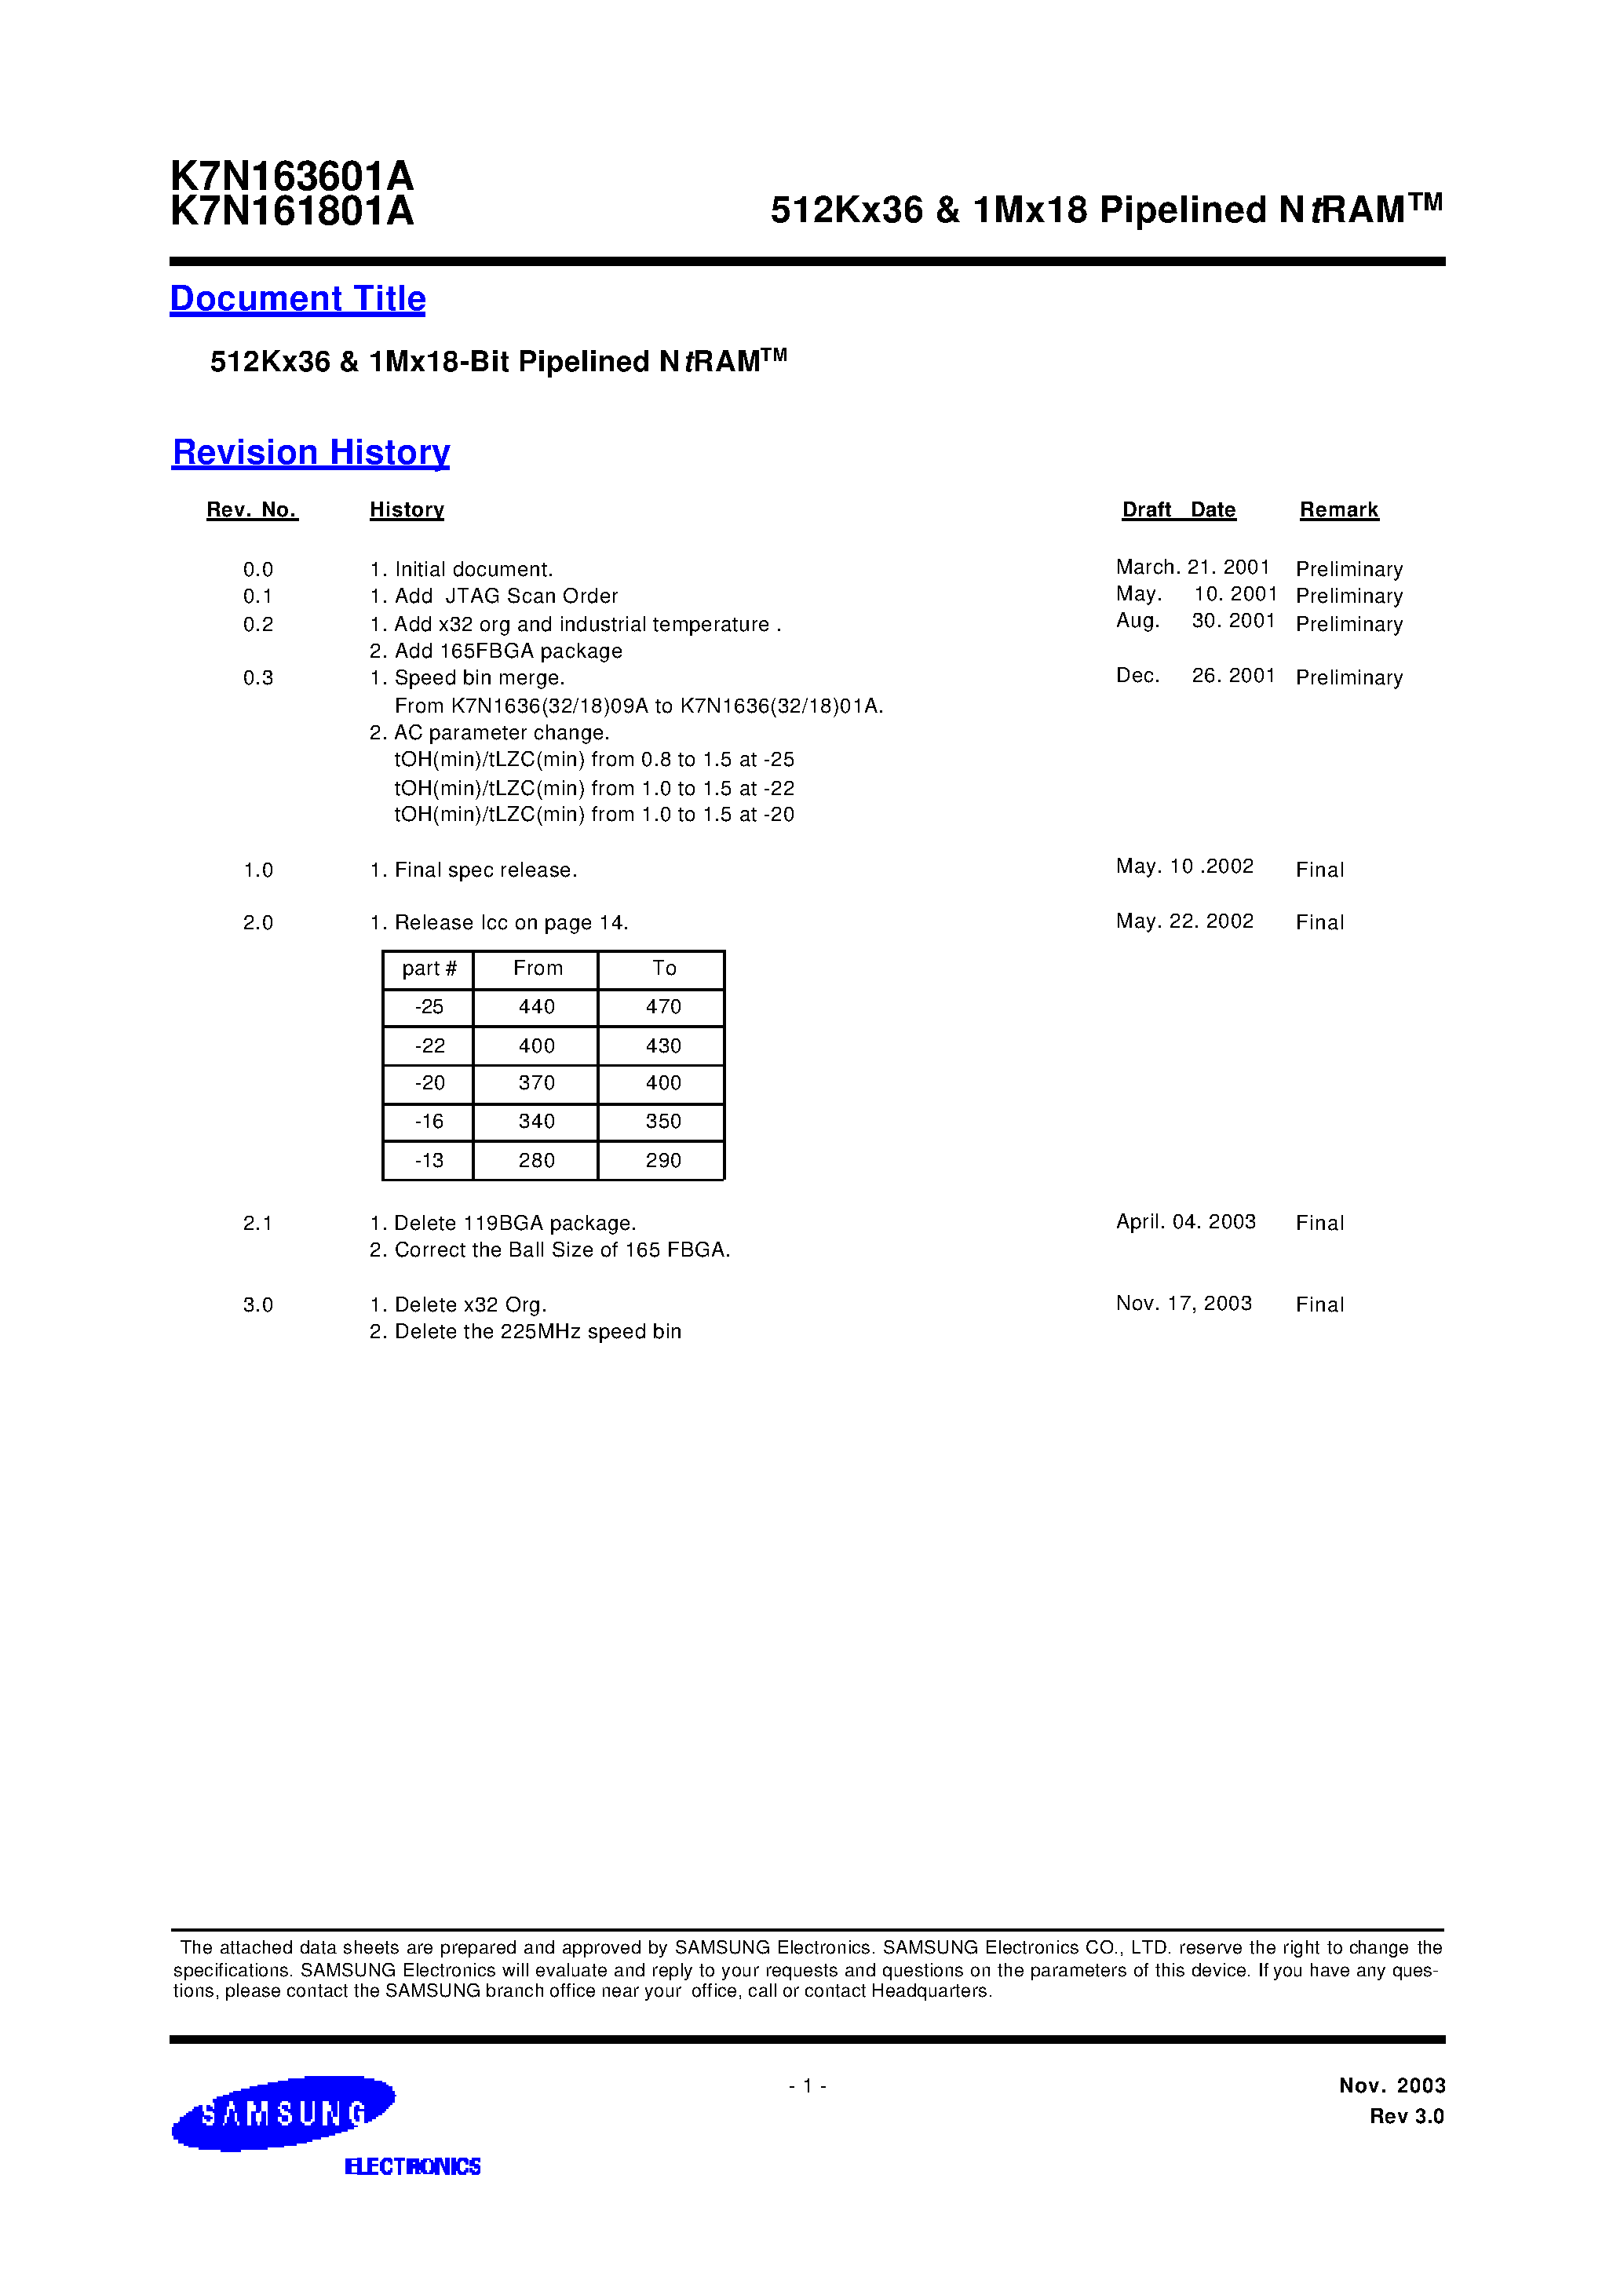 Даташит K7N163645A-Q(F)C(I)20 - 512Kx36 & 1Mx18 Pipelined NtRAM страница 1